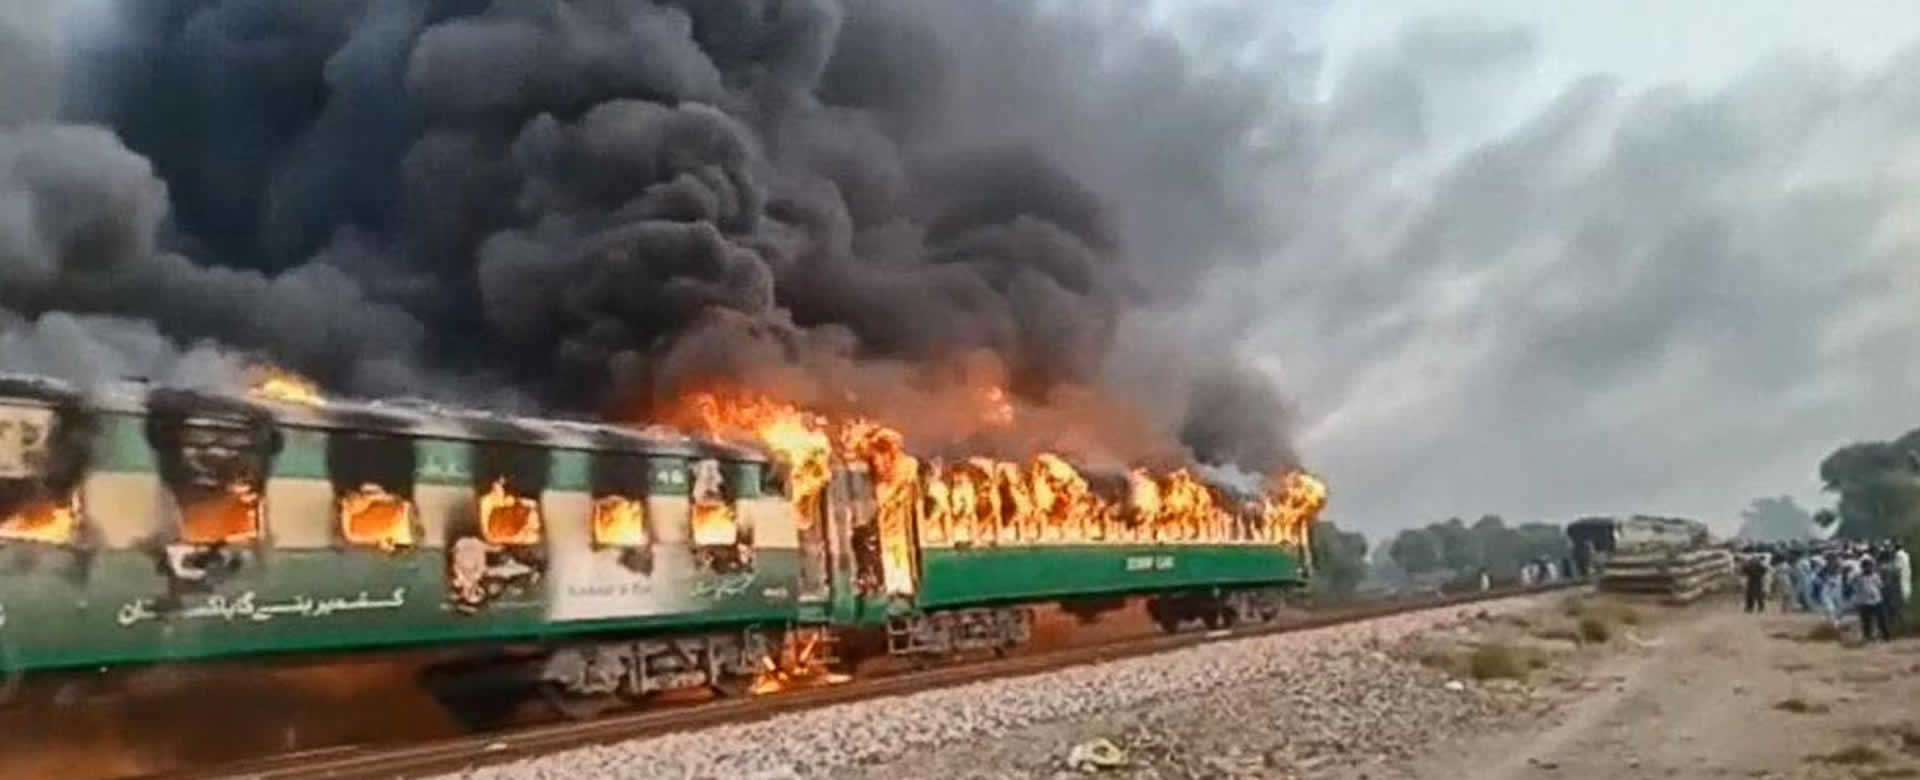 Explosión de un tren en Pakistán deja más de 70 muertos